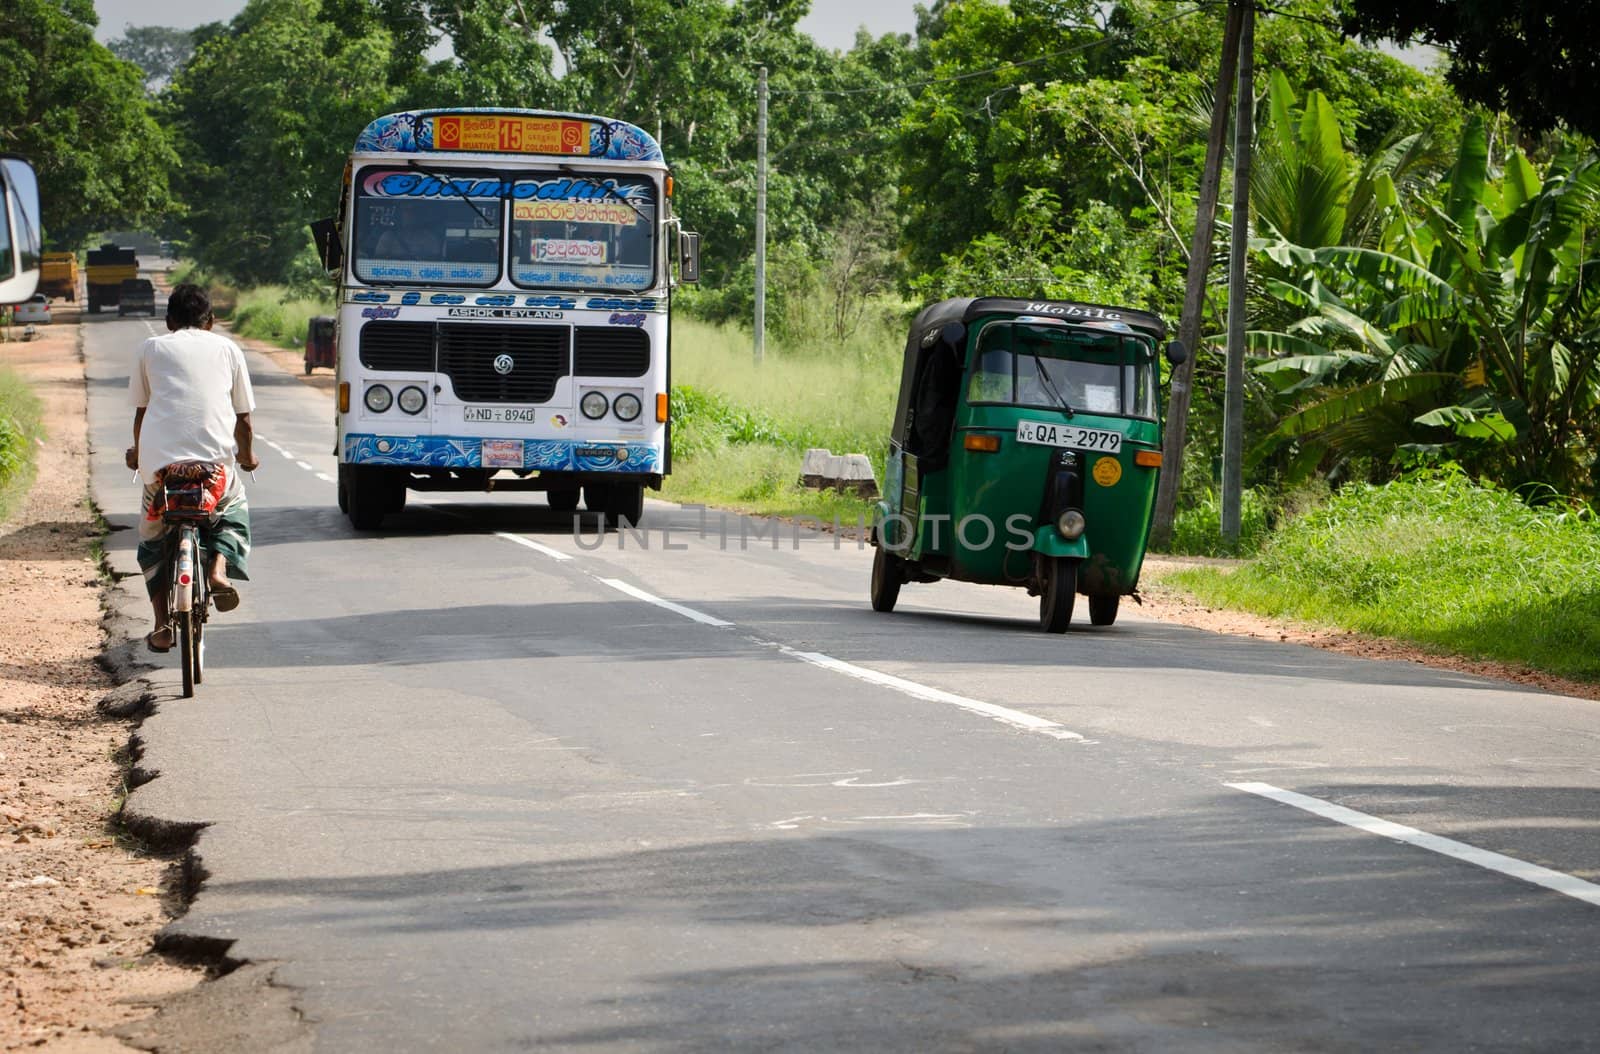 Asian regular public bus in Sri Lanka on a road by iryna_rasko